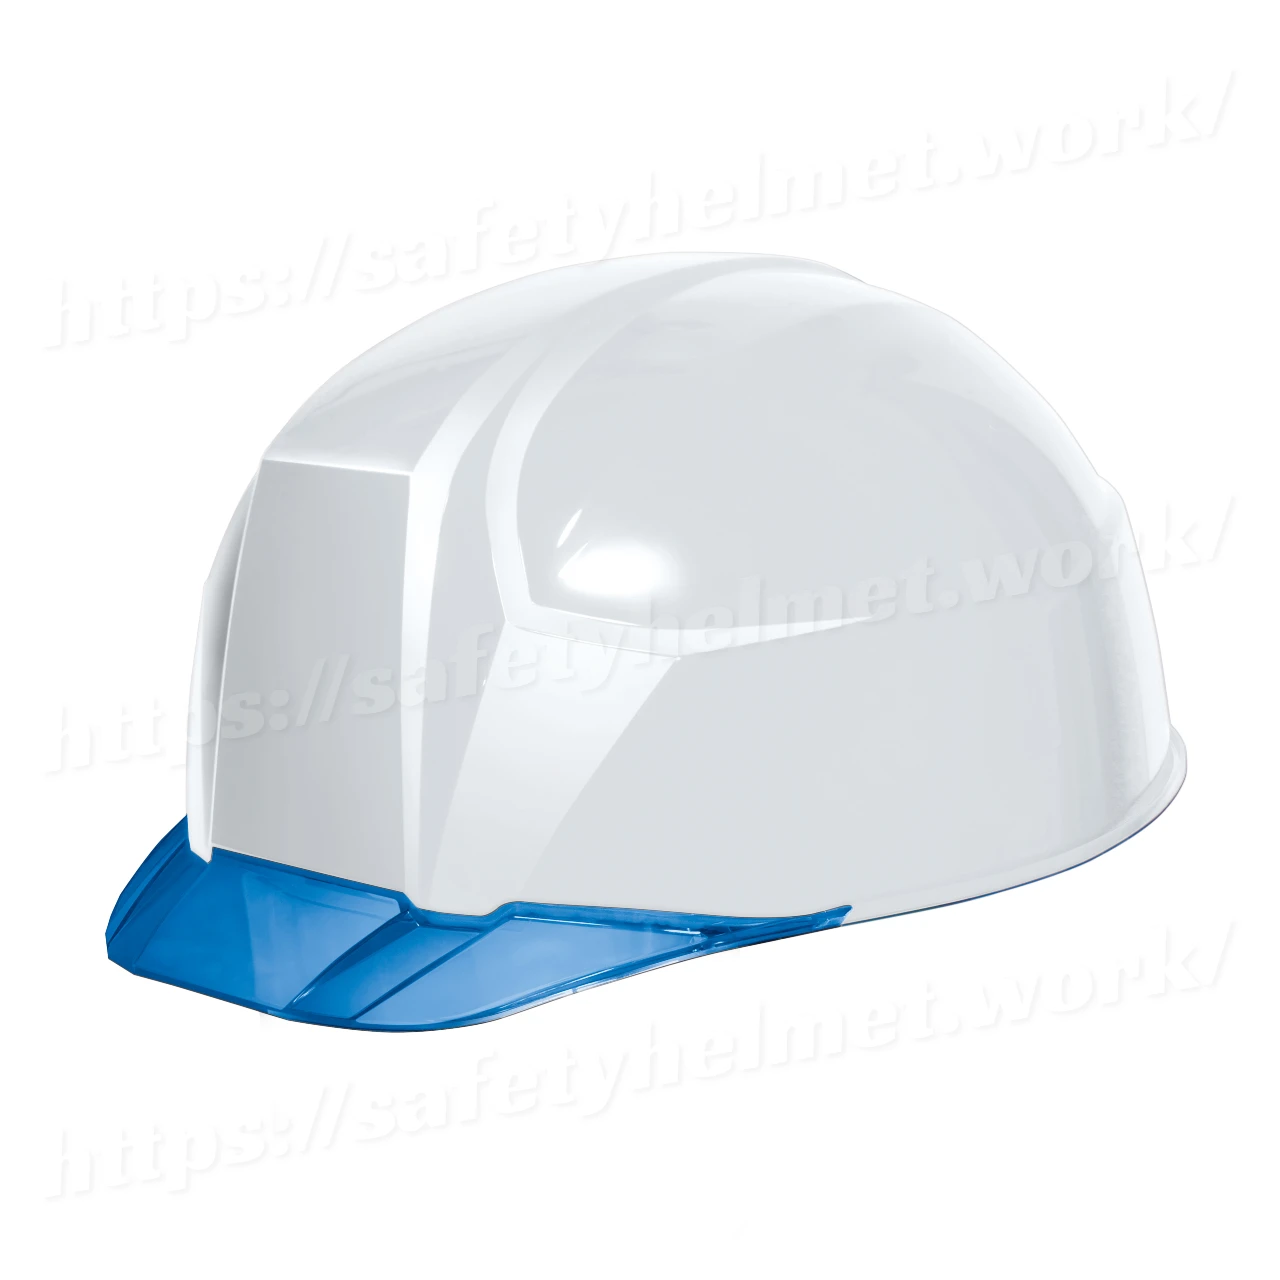 dic-lightest-helmet-keijin-clearvisor-aa23c-white-blue